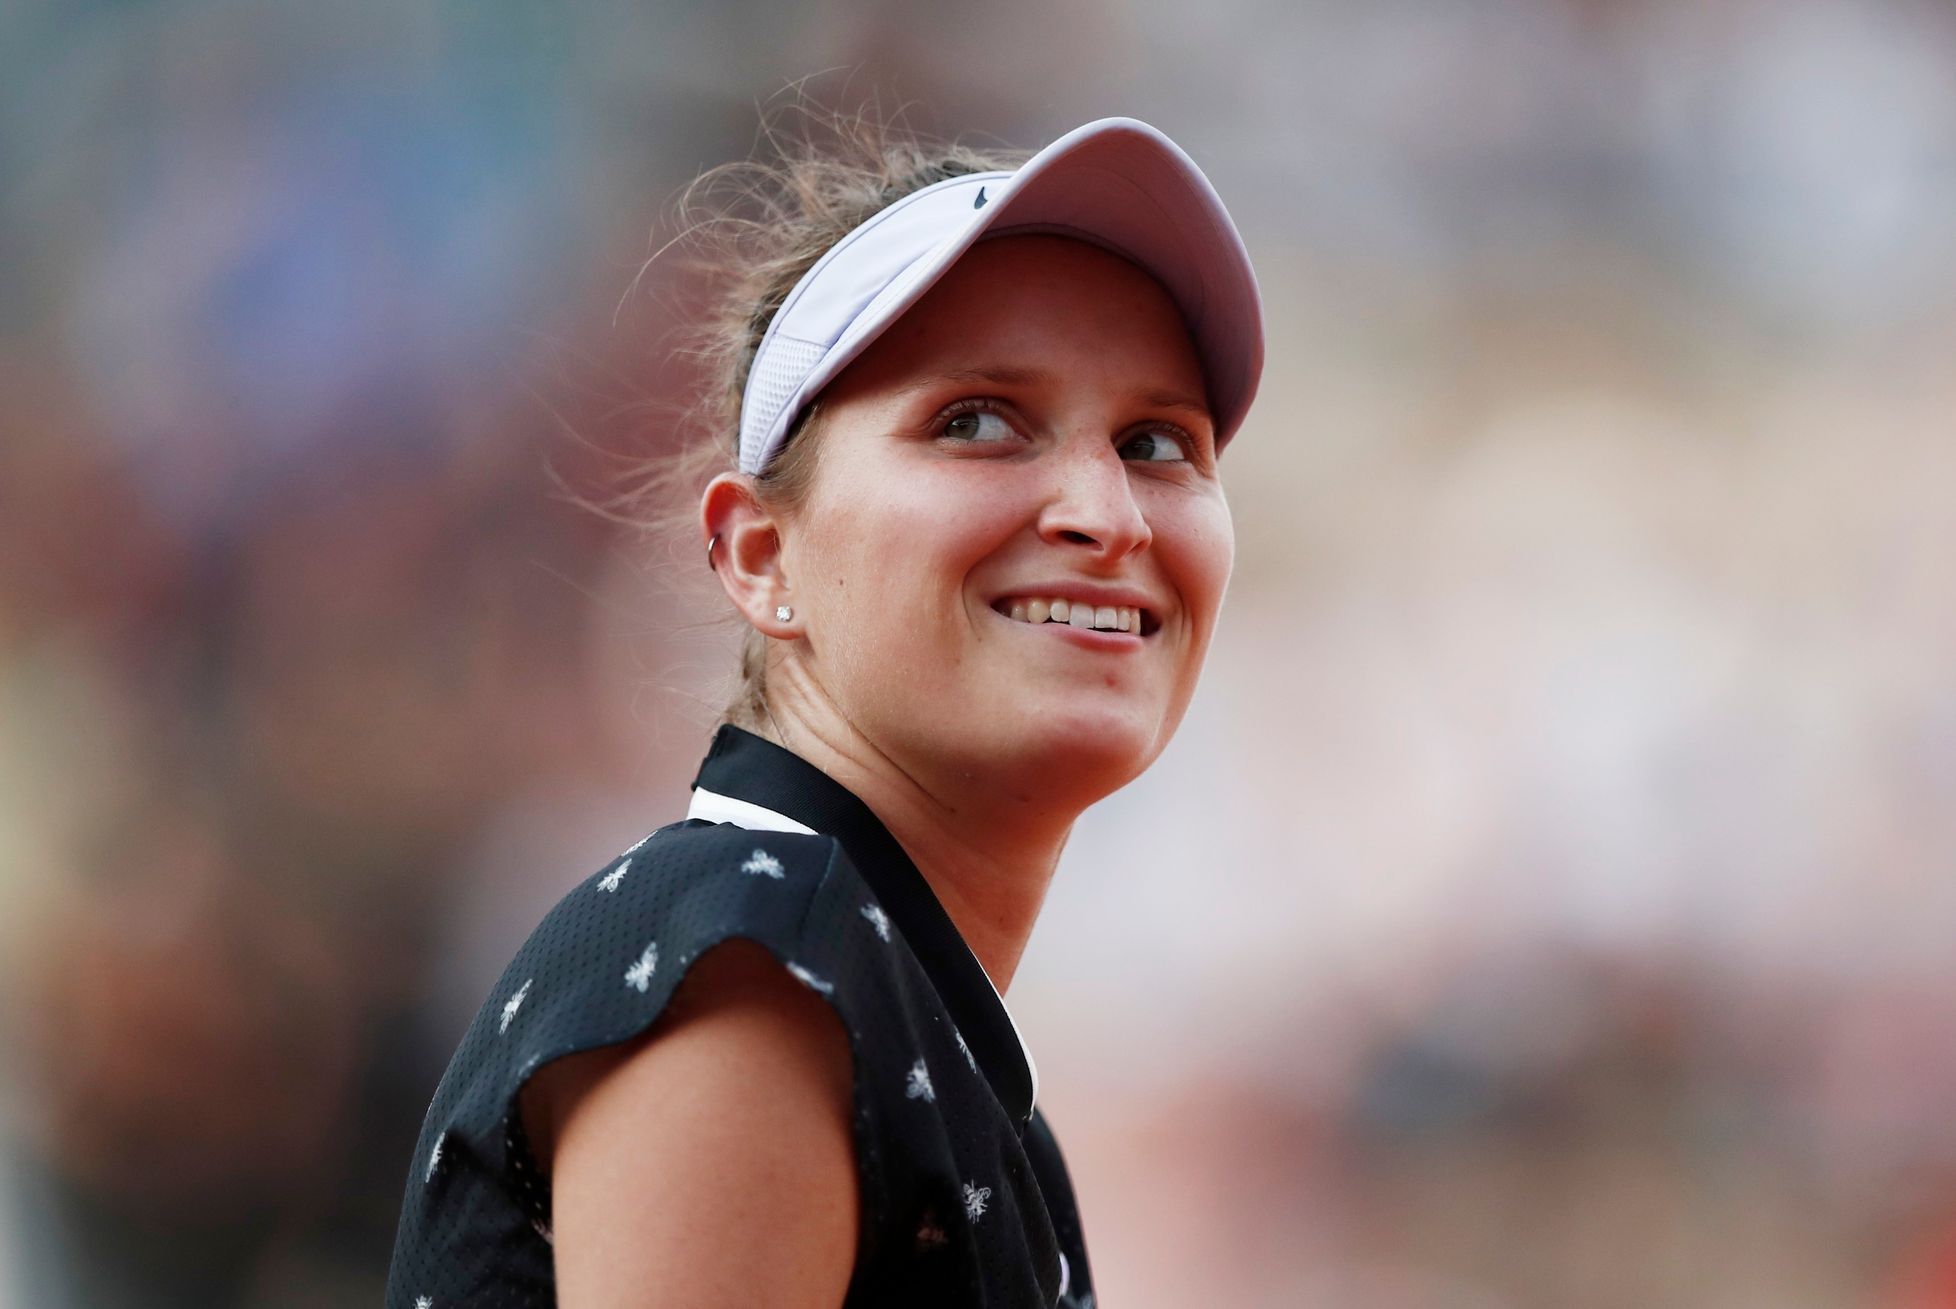 Markéta Vondroušová ve čtvrtfinále French Open 2019